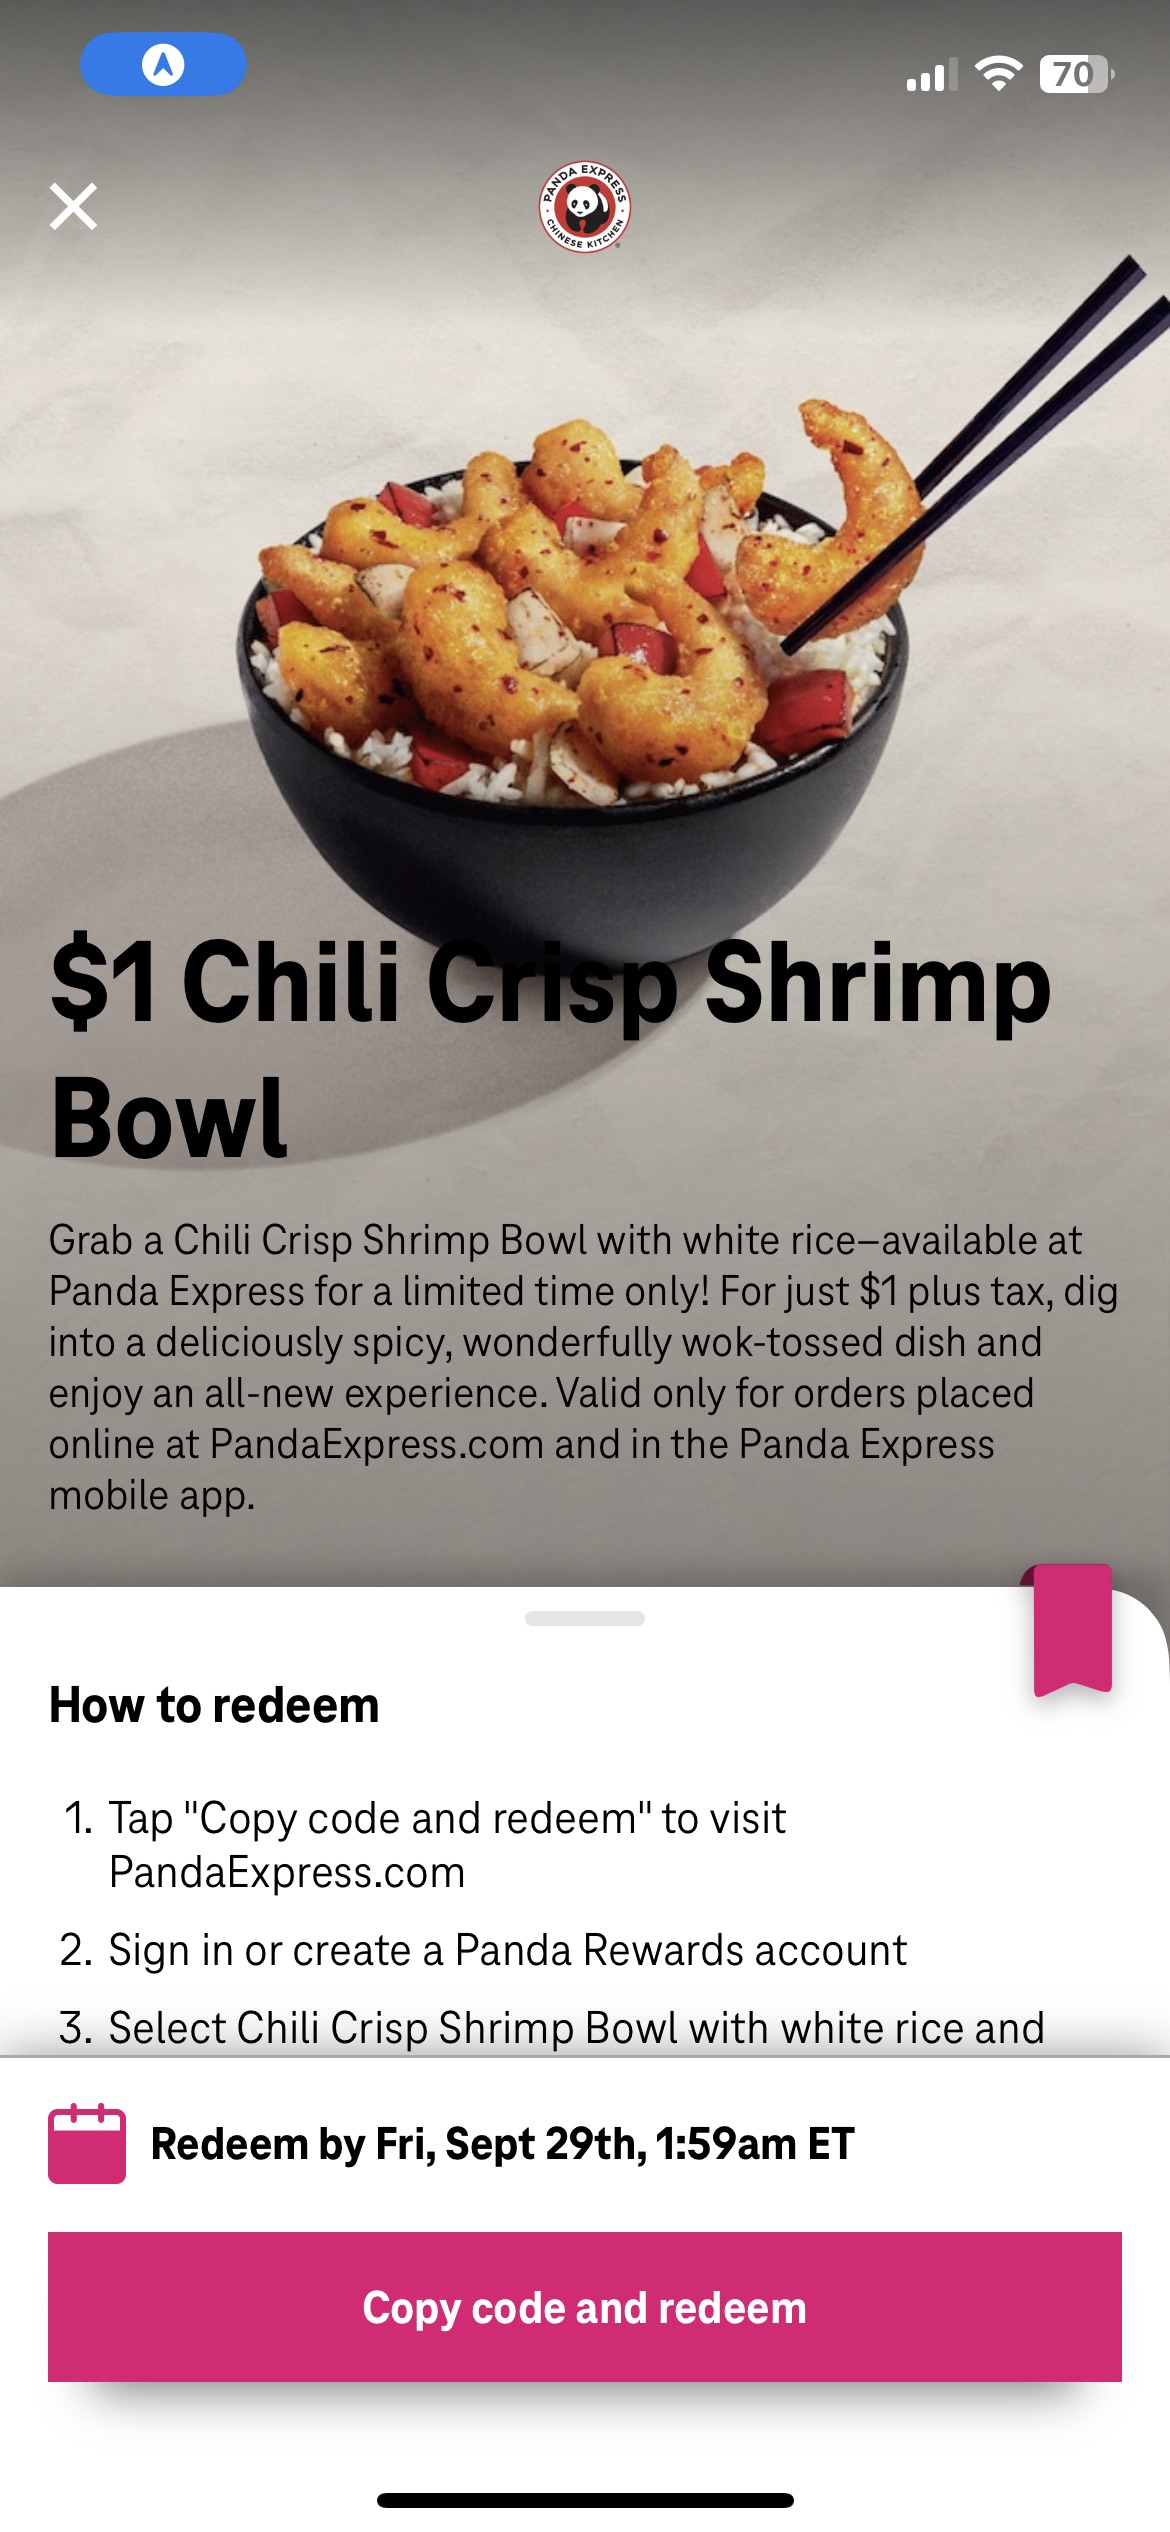 T mobile Tuesday $1 panda shrimp bowl